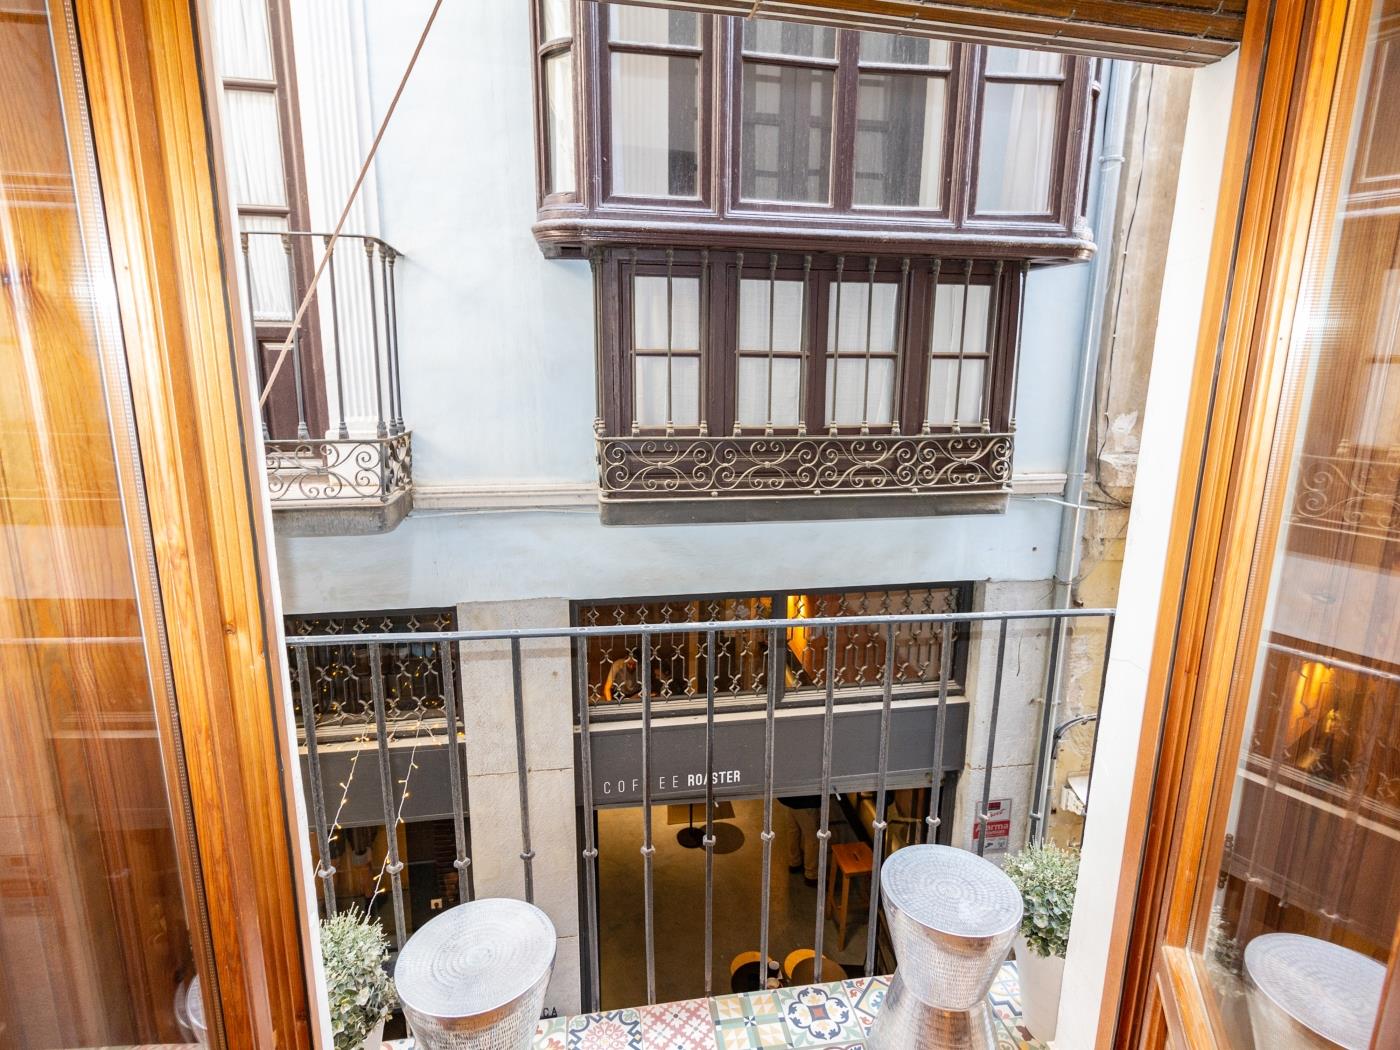 Apto Catedral. Mooi appartement met de beste locatie in het centrum van Granada. .en Granada